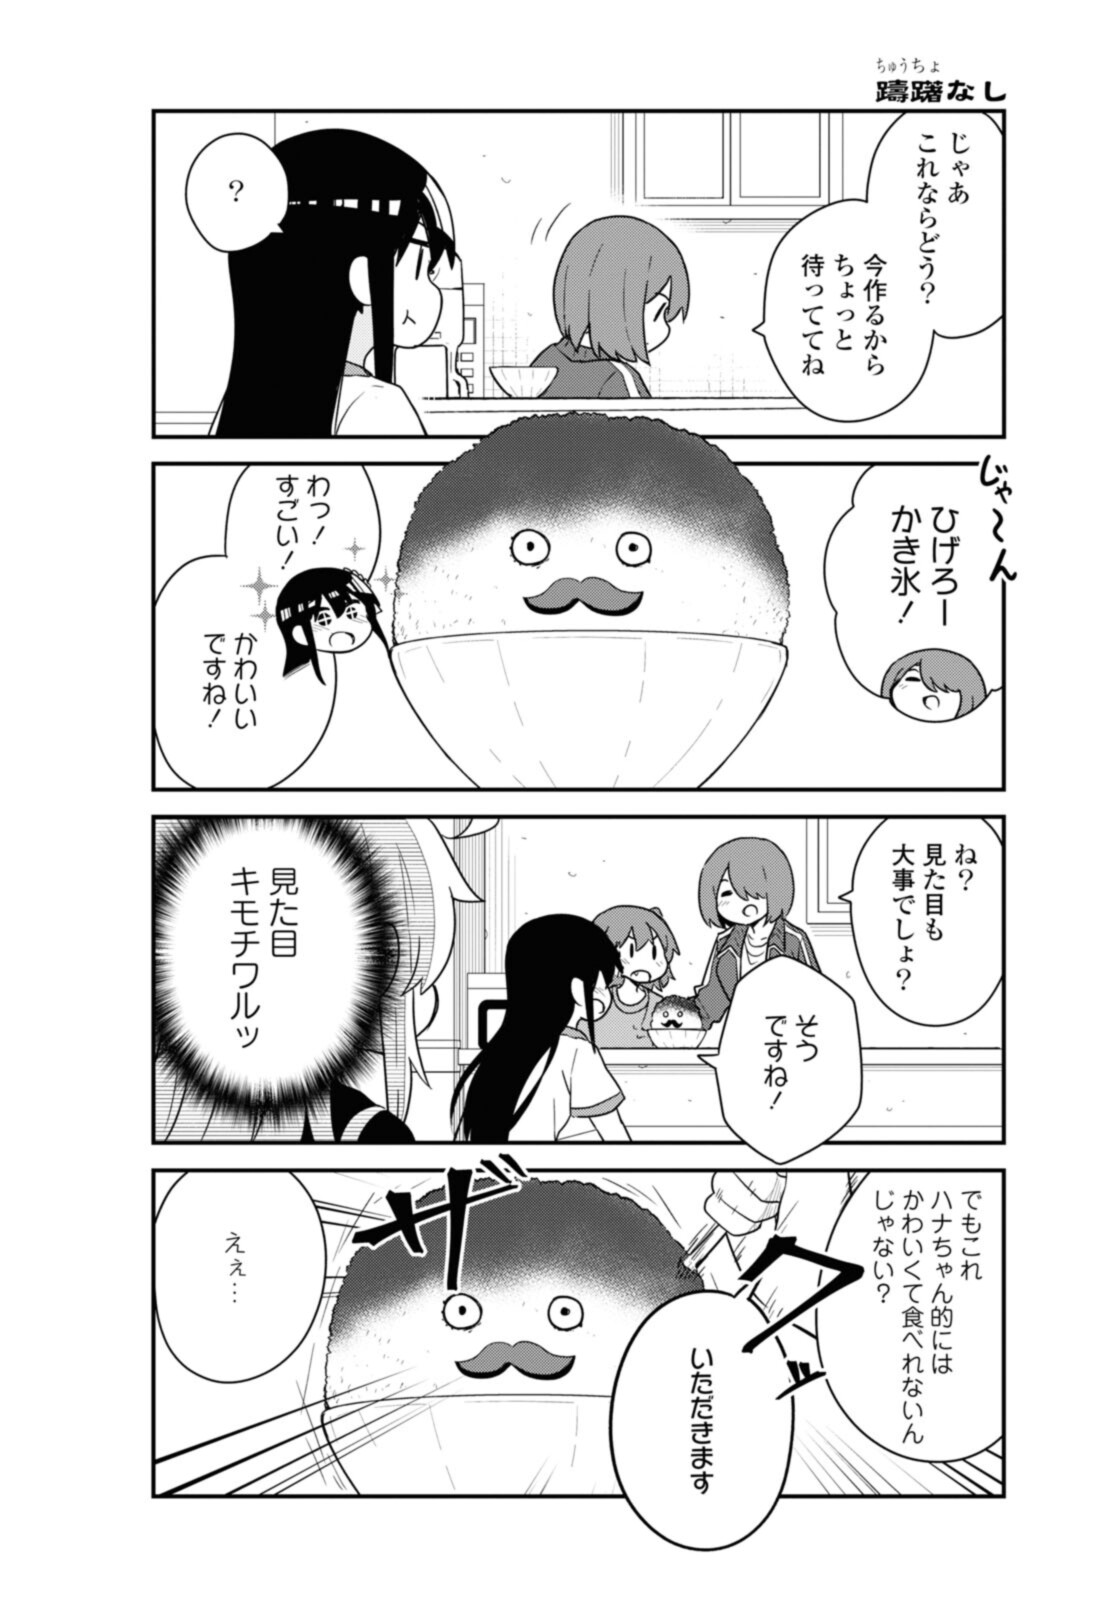 Watashi ni Tenshi ga Maiorita! - Chapter 88 - Page 9